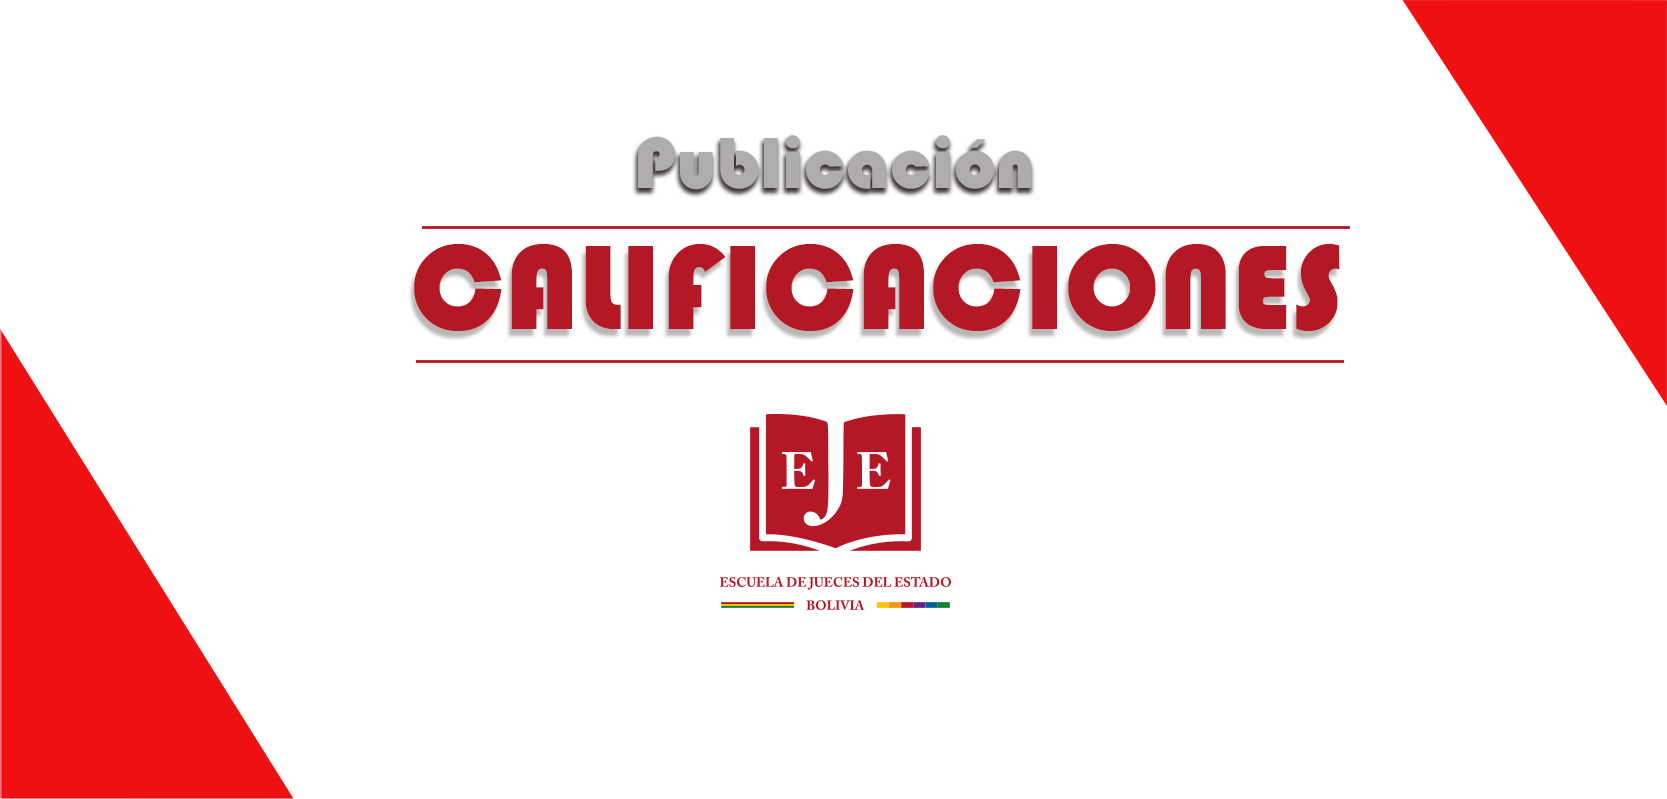 PUBLICACIÓN CALIFICACIONES-ACTUACIÓN JURISD. DE JUECES/JUEZAS DE EJECUCIÓN PENAL CON ENF. EN LA PROTEC. DE DDHH DE LAS PERSONAS PRIVADAS DE LIBERTAD